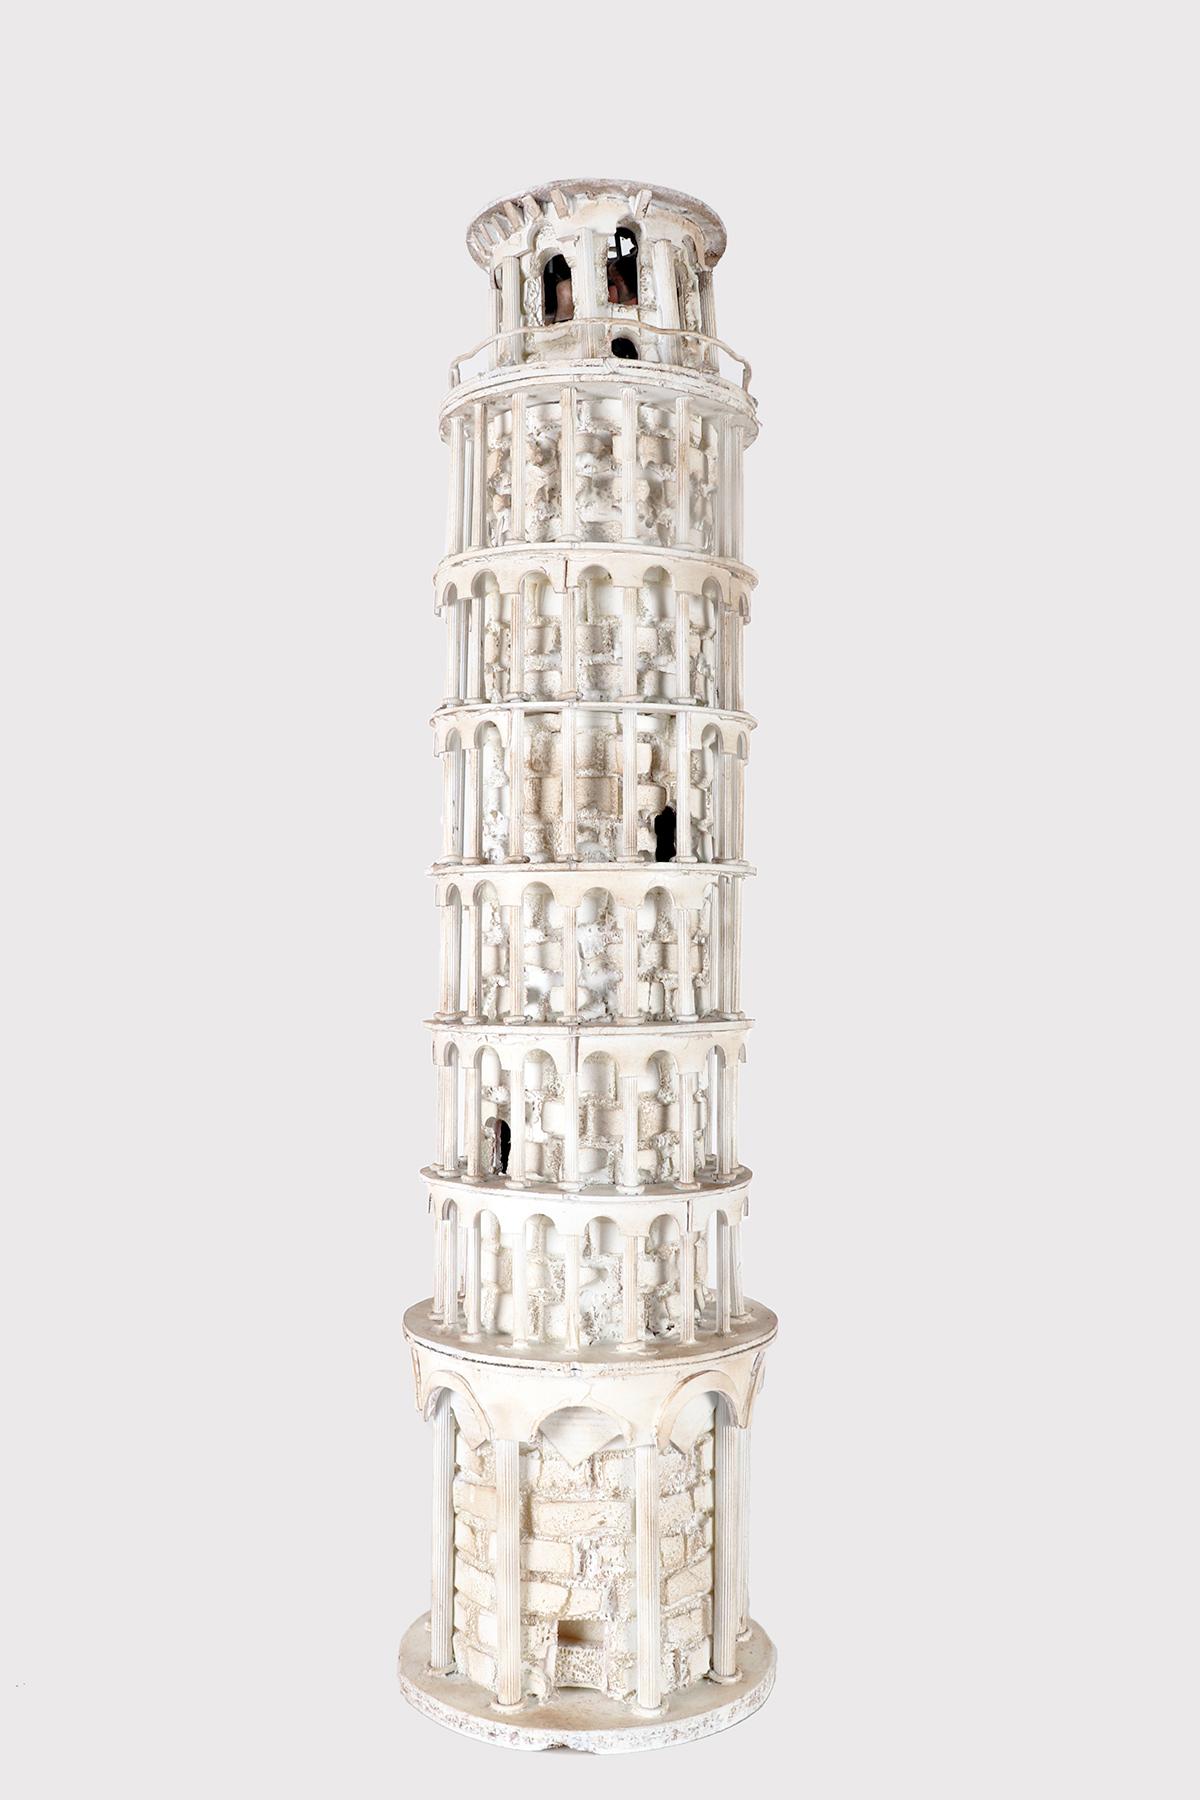 Maquette architecturale miniature Wunderkammer Grand Tour, entièrement réalisée à la main, en bois peint de couleur blanche et en polystyrène, représentant la Tour de Pise. Les cloches en laiton sont insérées dans la partie finale de la tour. Patine